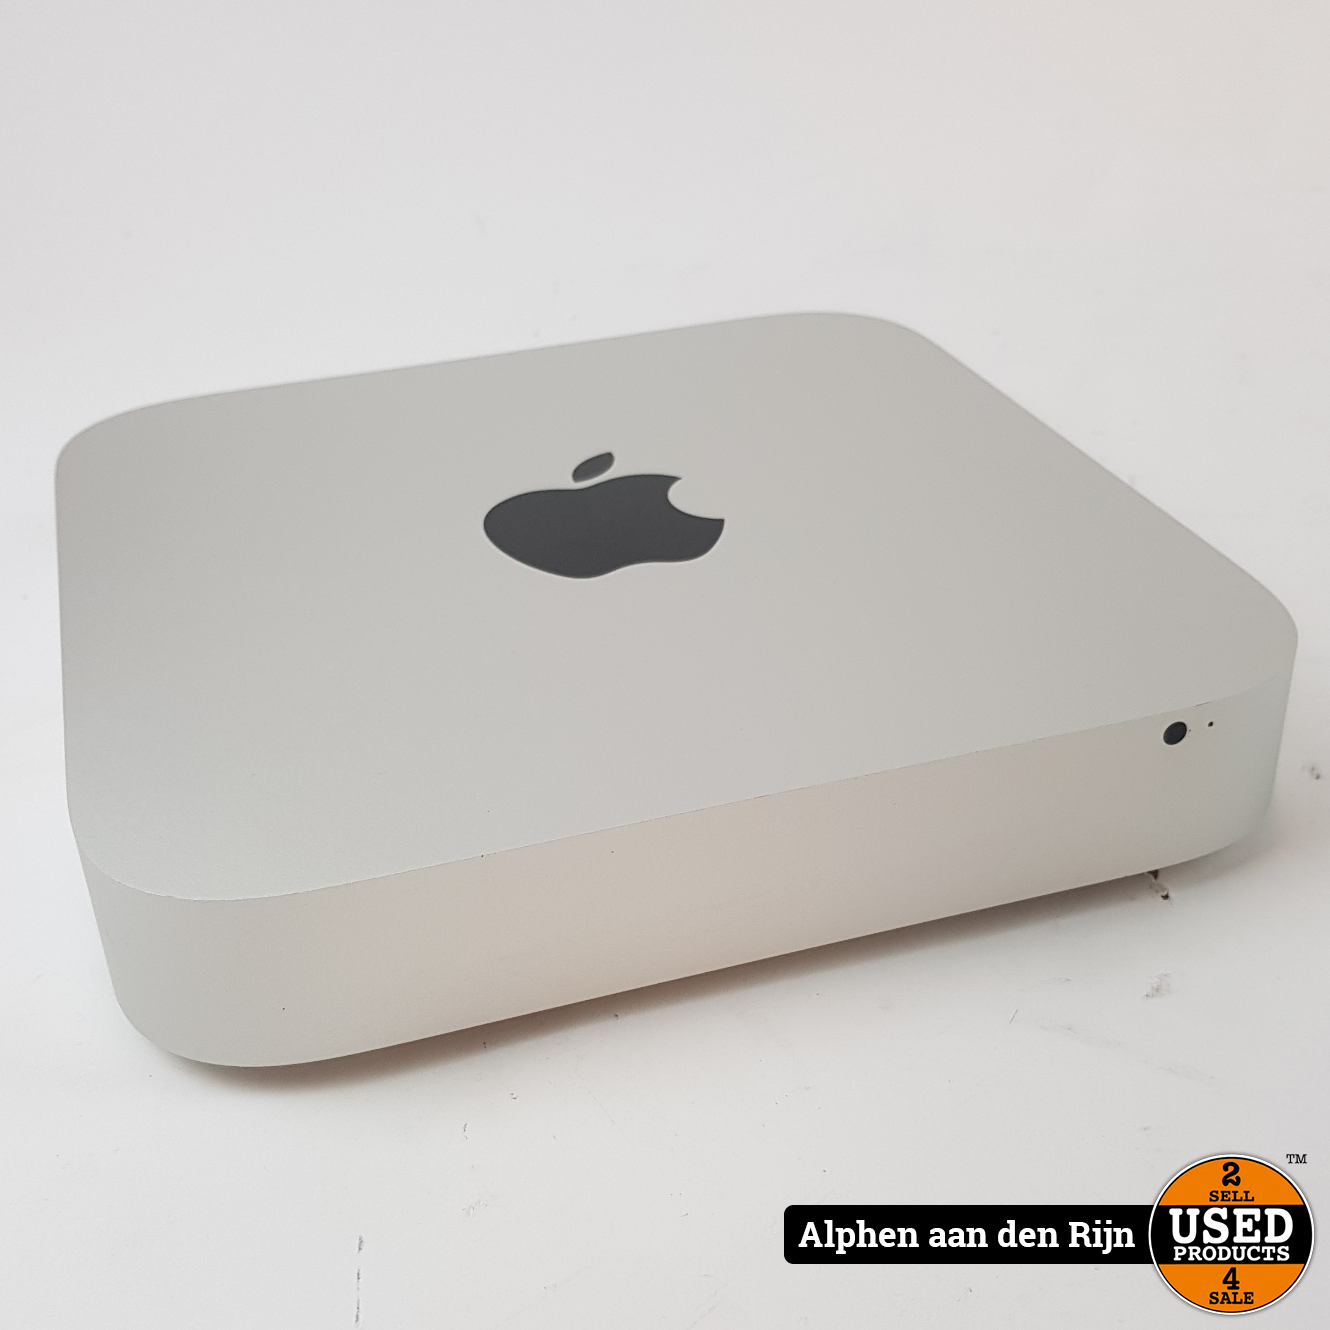 Ontwaken Bijdrager Wissen Apple Mac Mini, Late 2012 - Used Products Alphen aan den Rijn